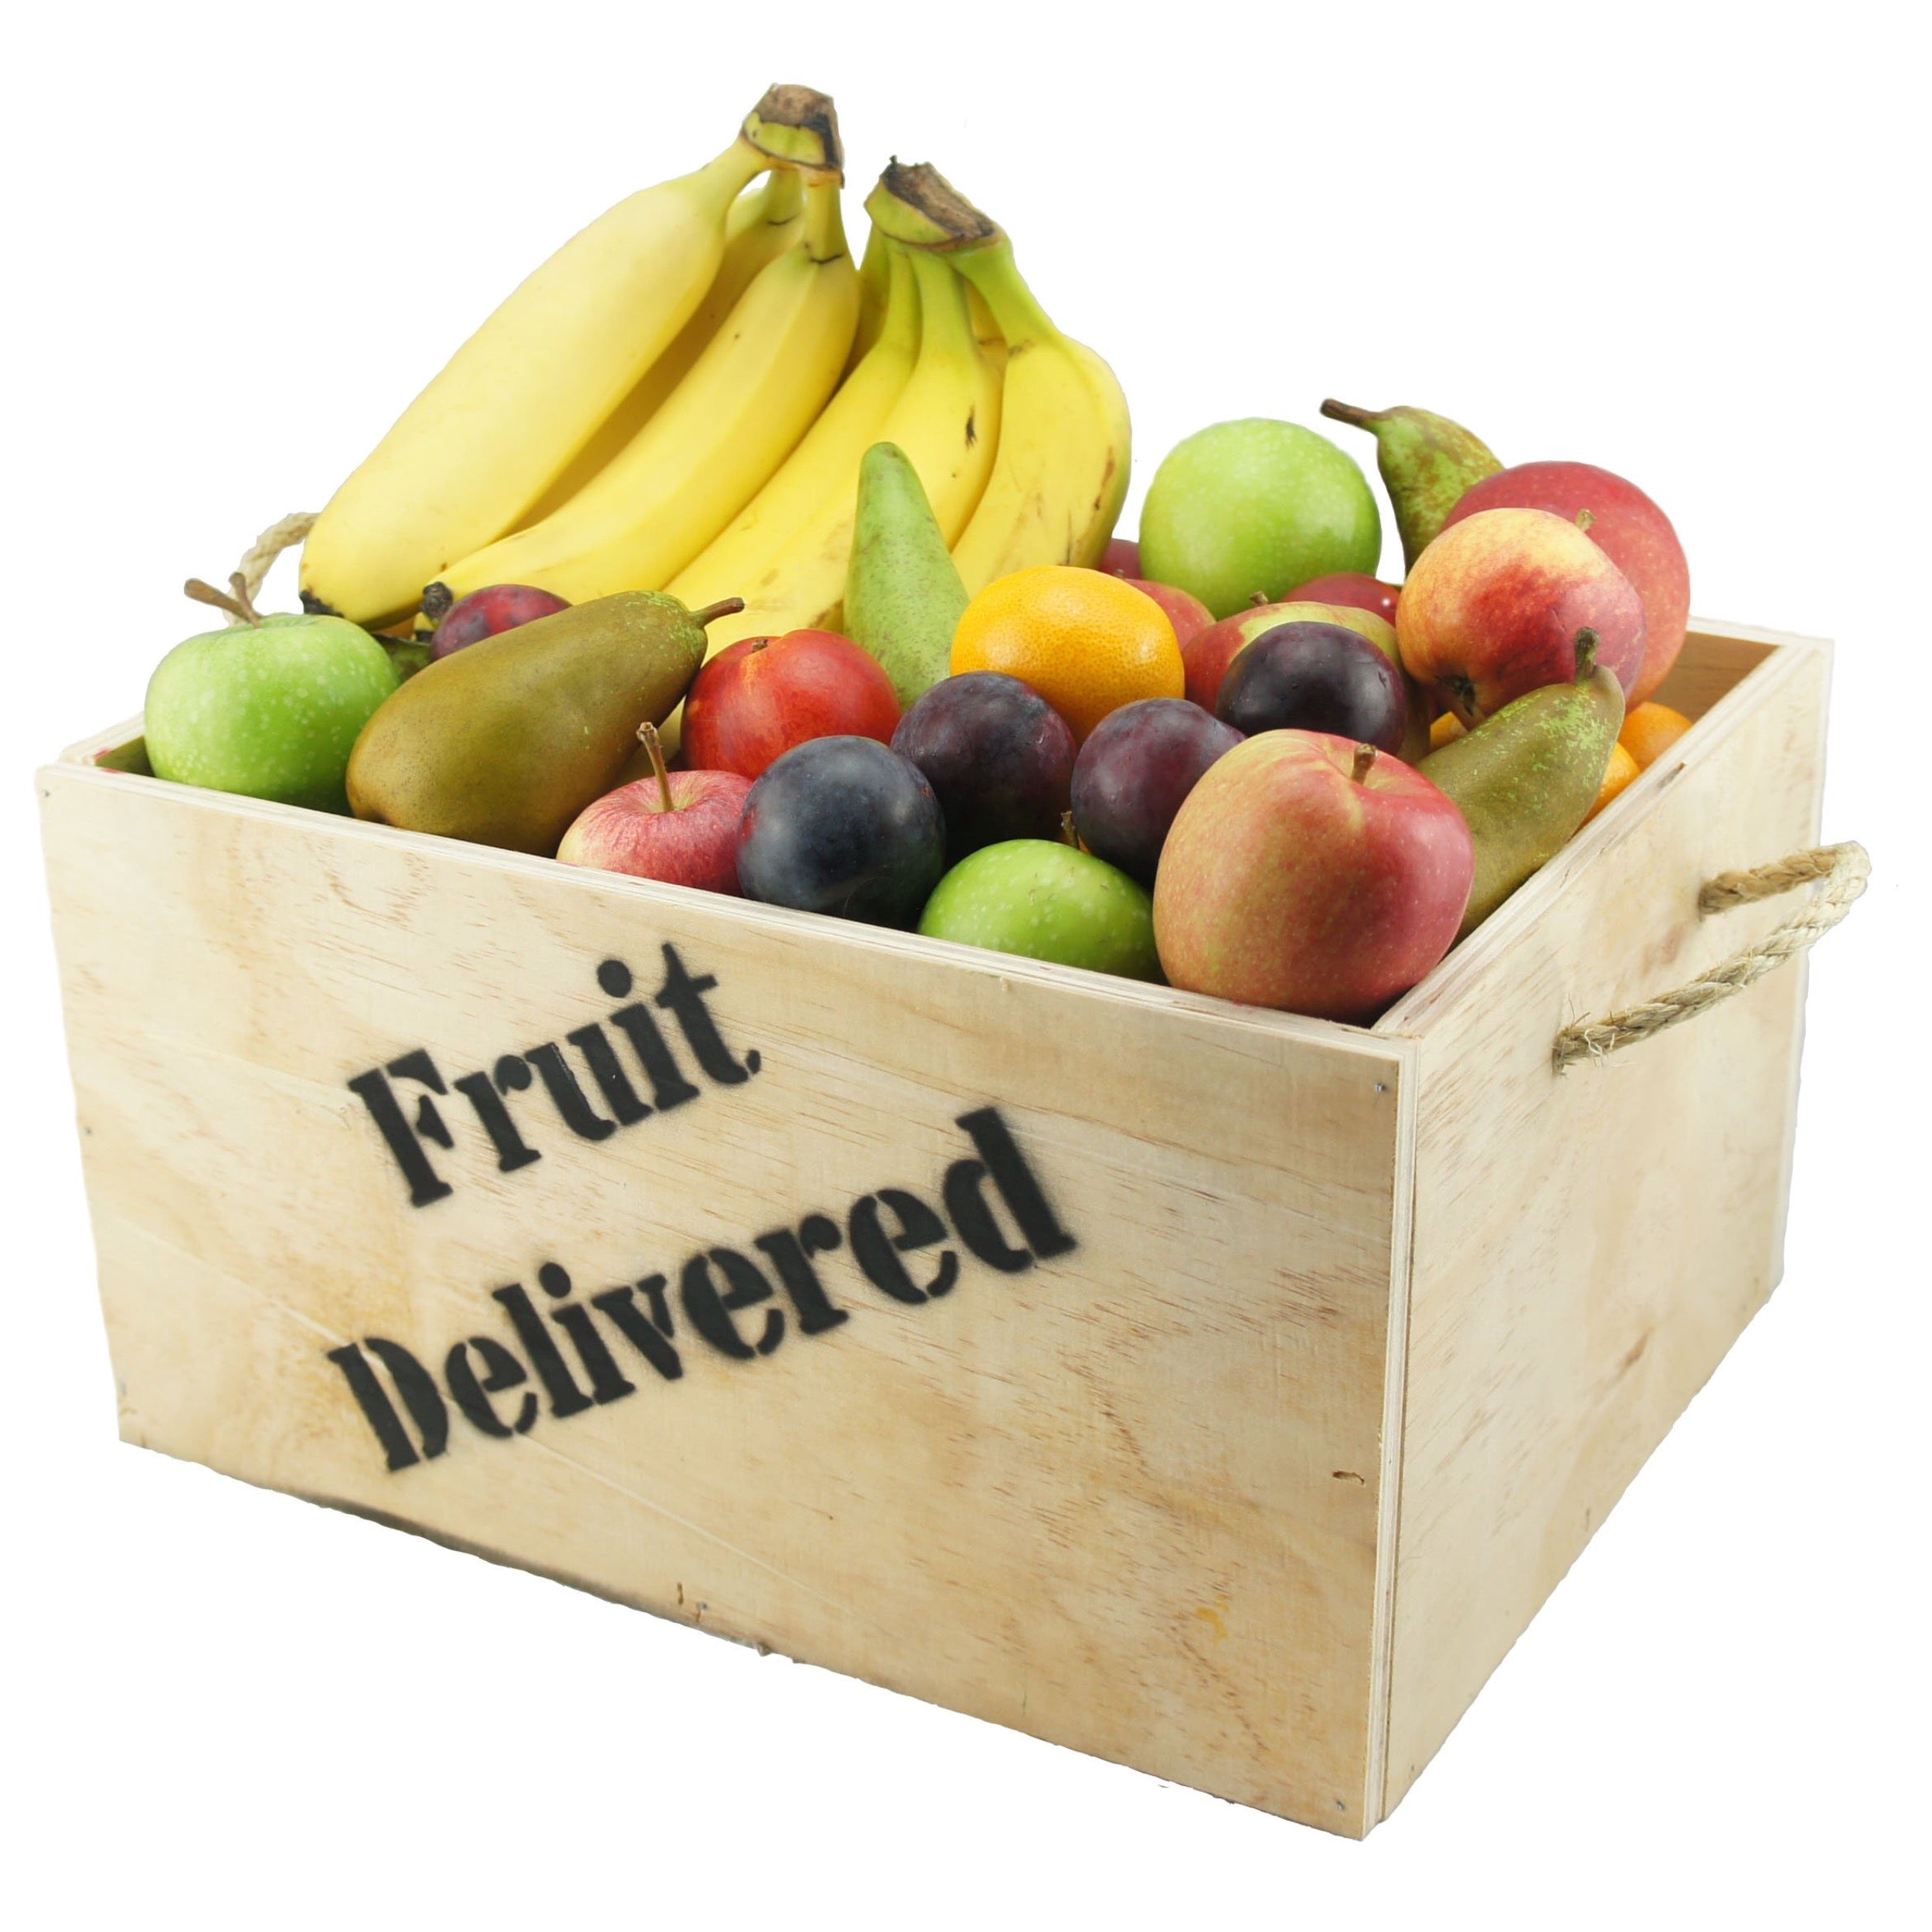 Blox fruits fruits rework. Фрукты Блокс Фрут. Овощи и фрукты. Тир фруктов в Блокс Фрут. Бокс с фруктами.